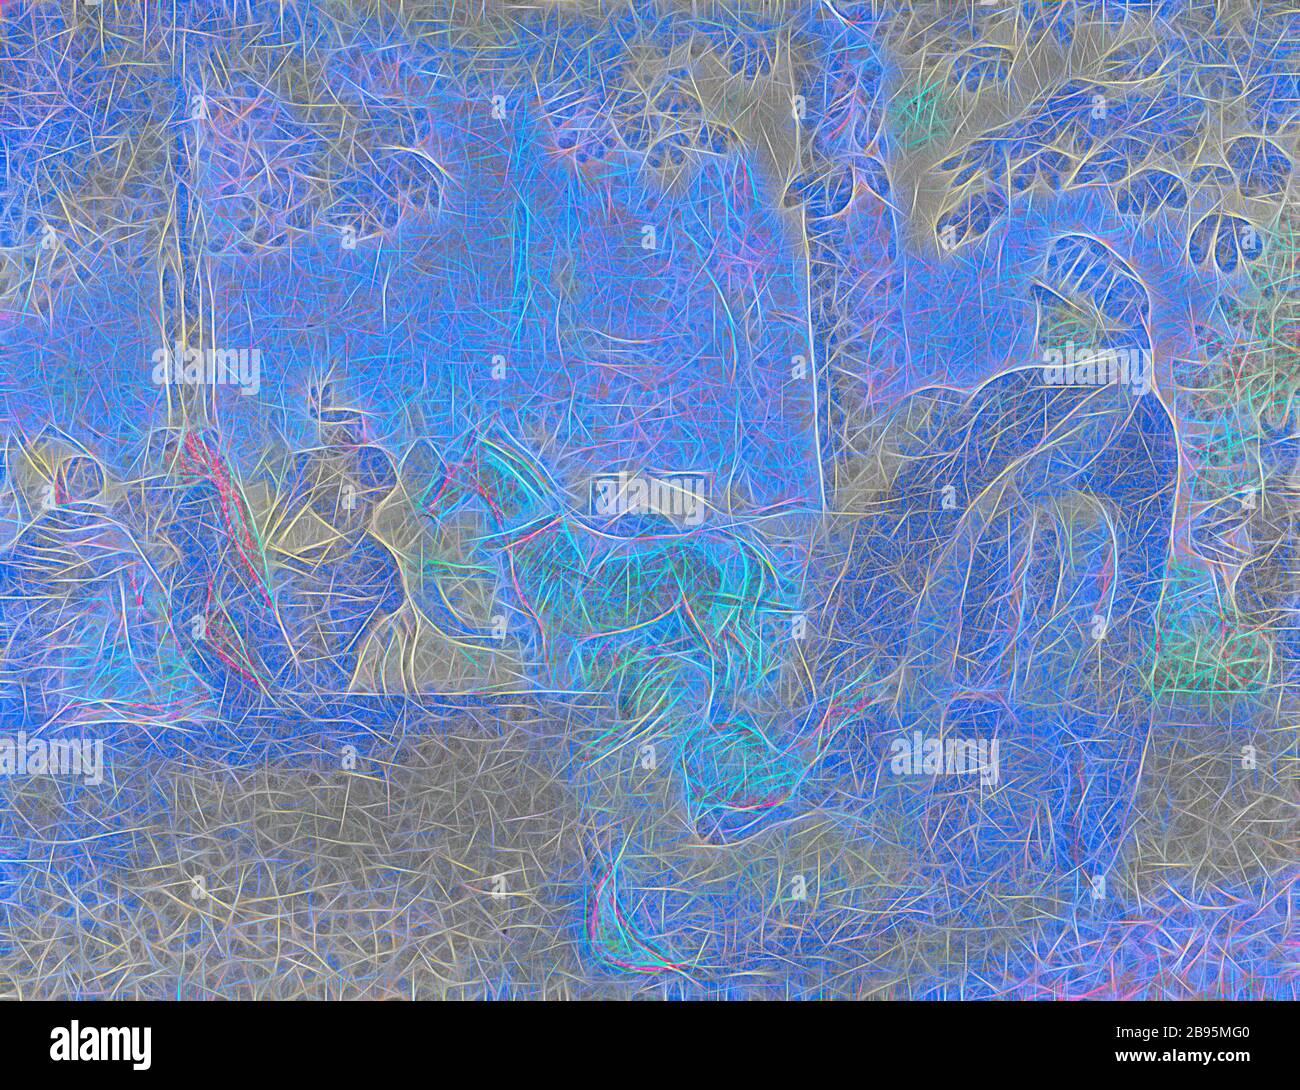 Aux champs-Élysées (sur les champs-Élysées), Henri Edmond Cross (français, 1856-1910), Auguste Clot, Printer (français, 1858-1936), 1898, lithographie couleur, 8 x 10-1/4 in. (image), 10-3/8 x 13 in. (Feuille), inscrit au crayon, sous l'image, L.L.: Henri Edmond Cross, série, Pan, réinventé par Gibon, conception de la gaie chaleureuse de luminosité et de rayons de lumière radiance. L'art classique réinventé avec une touche moderne. La photographie inspirée du futurisme, qui embrasse l'énergie dynamique de la technologie moderne, du mouvement, de la vitesse et révolutionne la culture. Banque D'Images